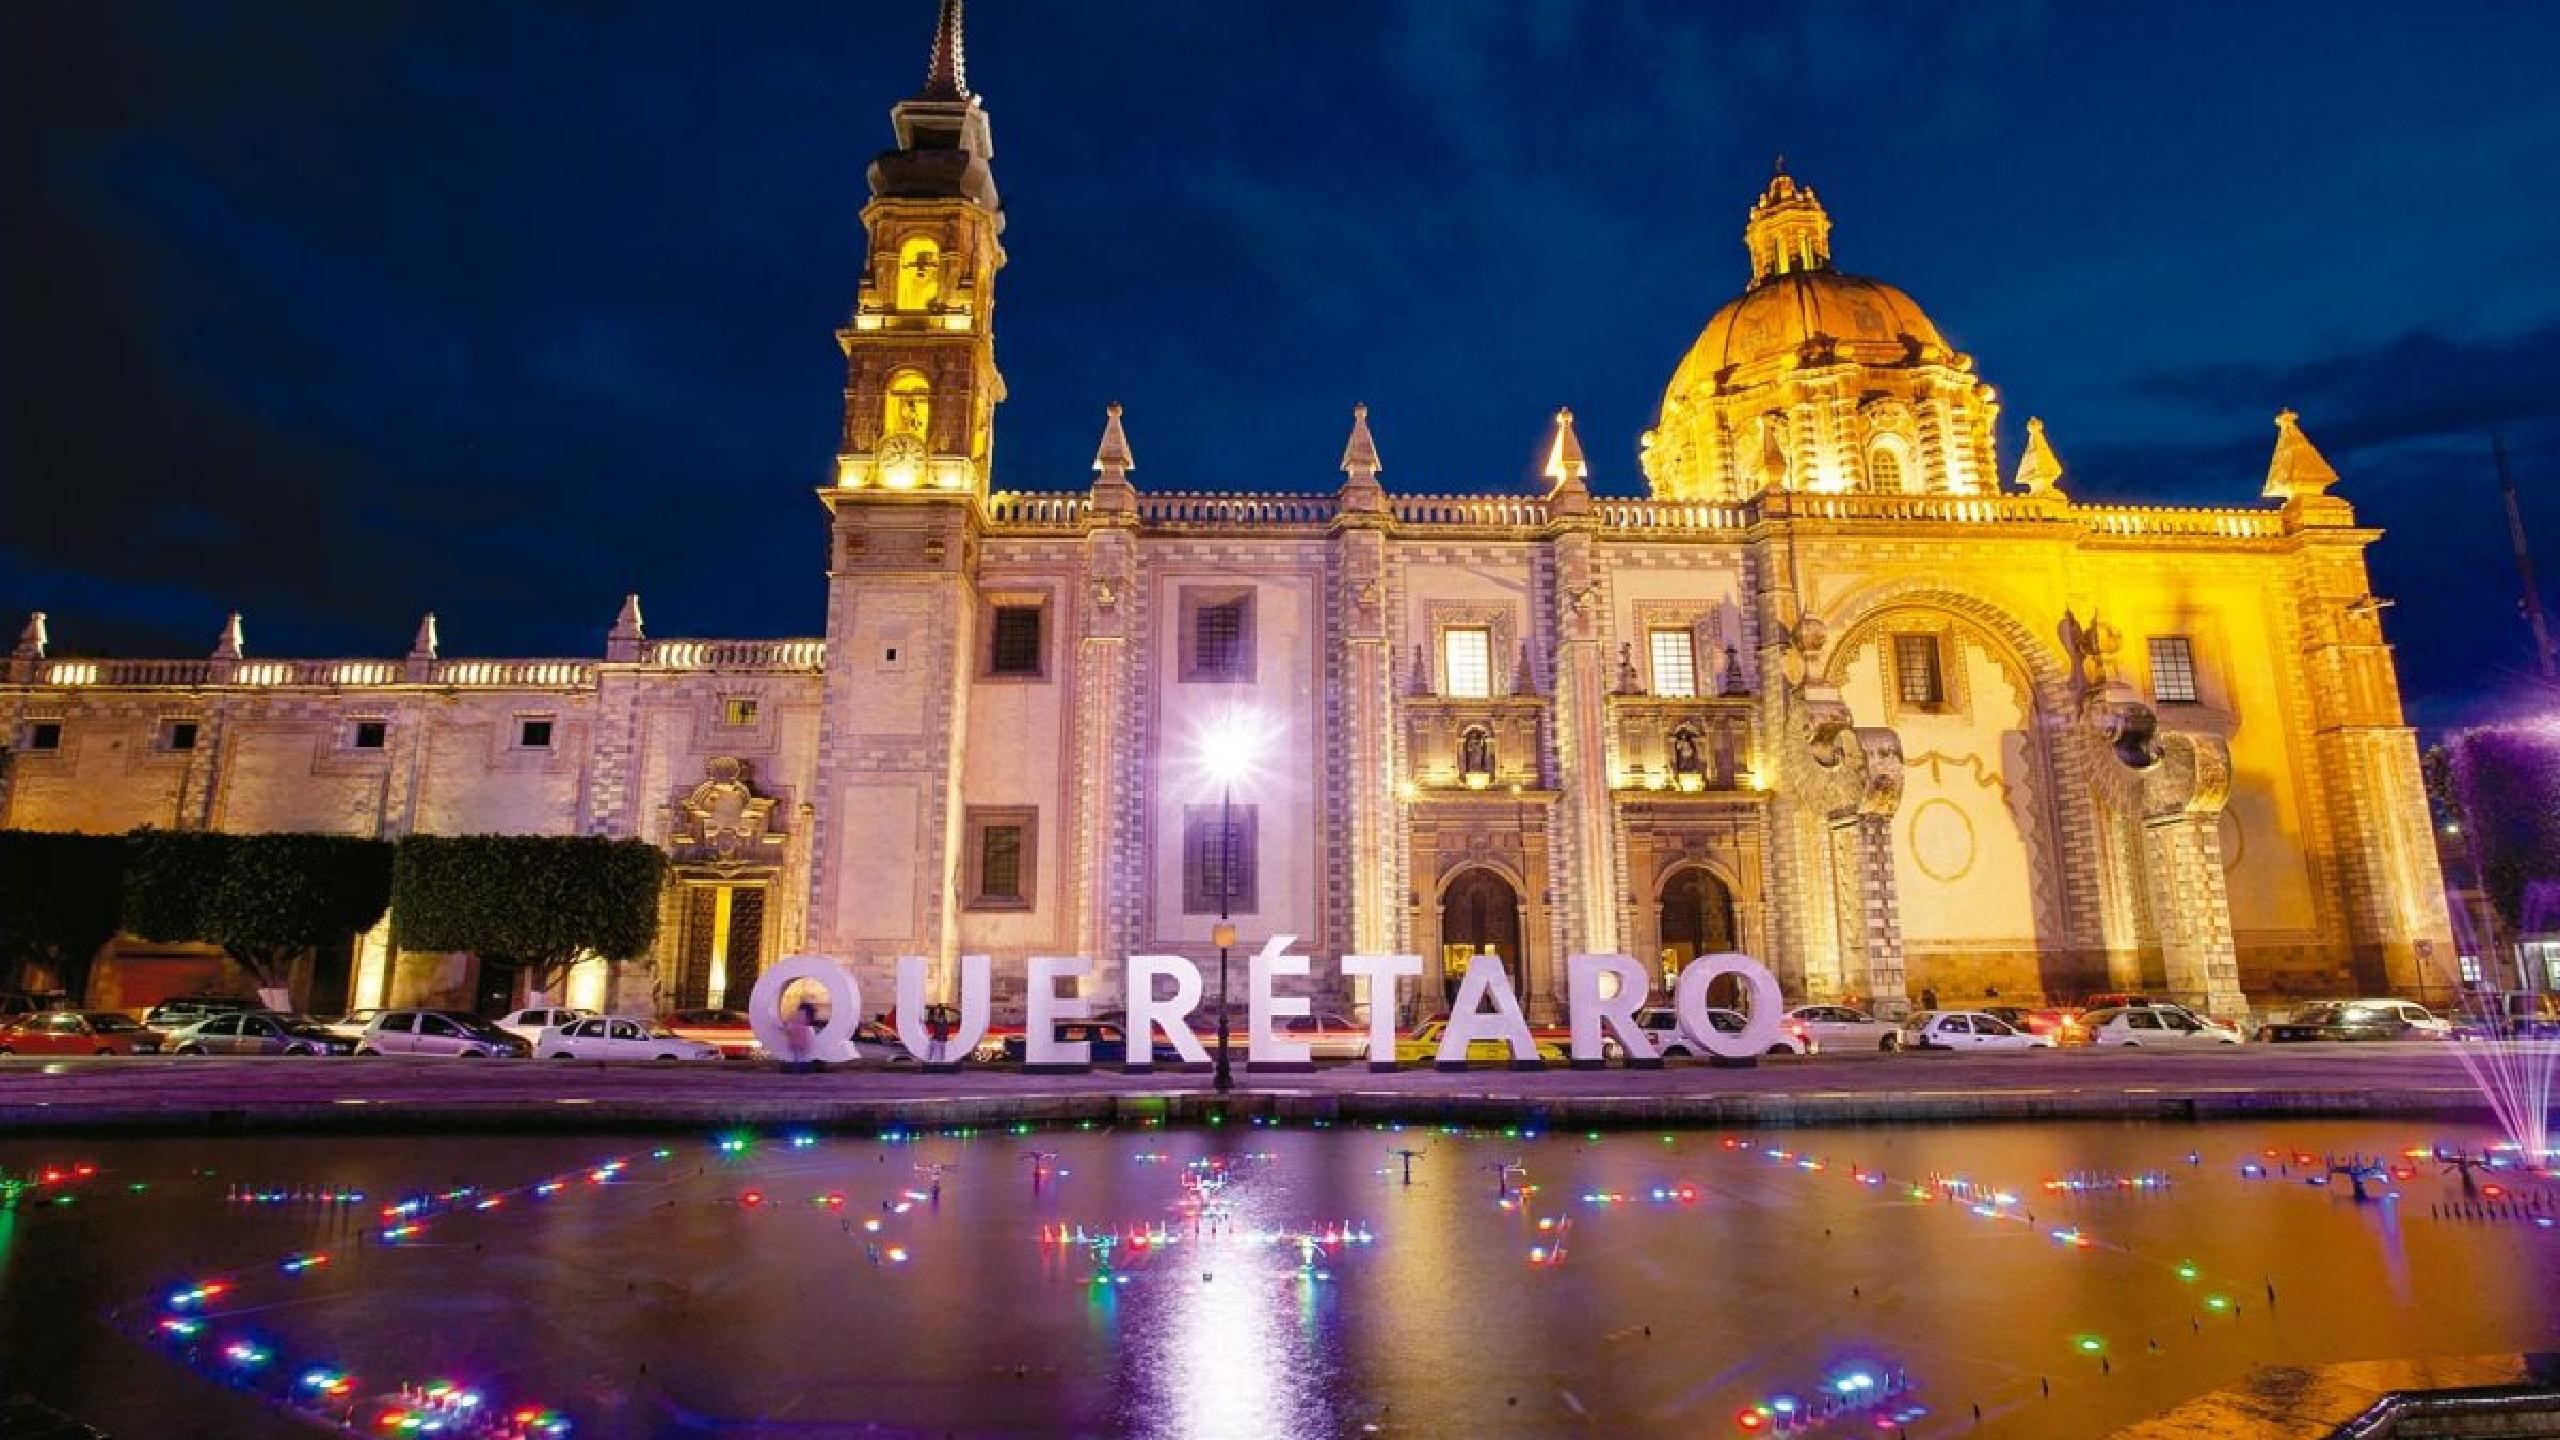 Organización de Bodas en Querétaro: Captura los Momentos más Románticos con Nuestros Servicios de Fotografía, Pedidas de Mano y Event Planning